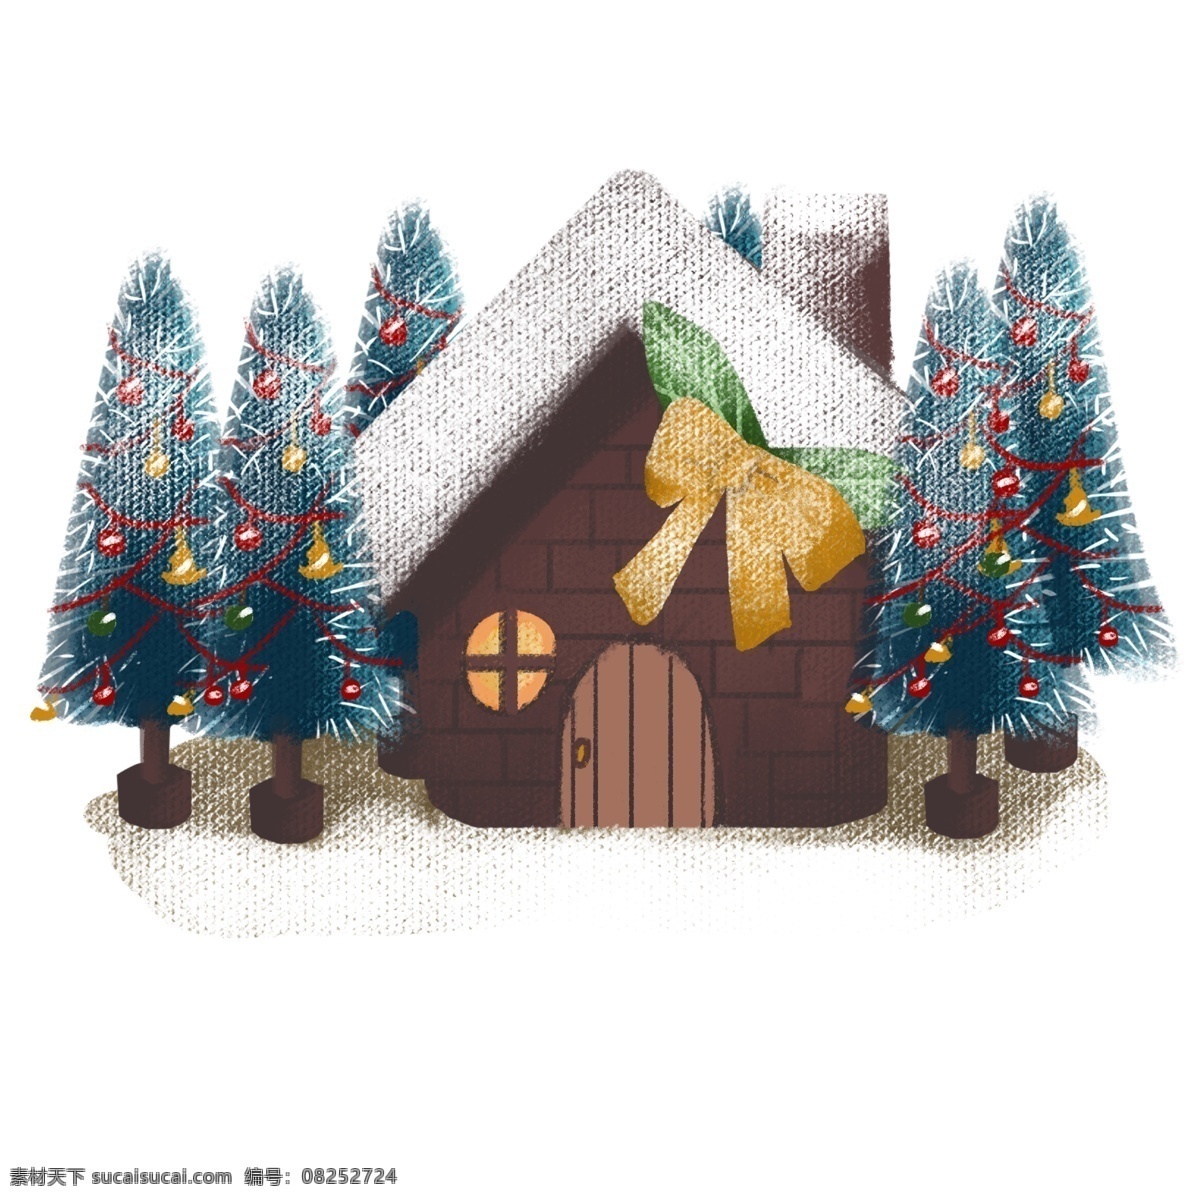 手绘 圣诞树 屋 彩色 圣诞树屋 卡通 免抠 透明底 无背景 原创 平面设计 装饰设计 插画 装饰 小清新 通用